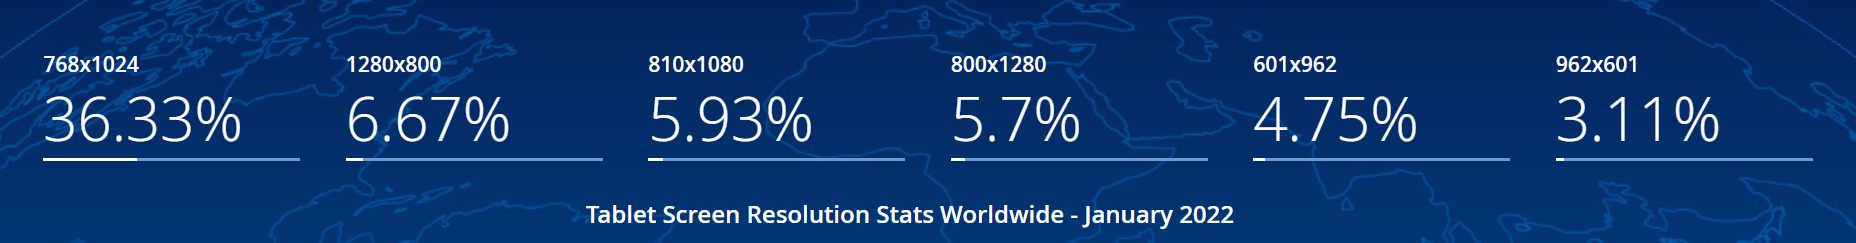 [https://gs.statcounter.com/screen-resolution-stats/tablet/worldwide](https://gs.statcounter.com/screen-resolution-stats/tablet/worldwide)